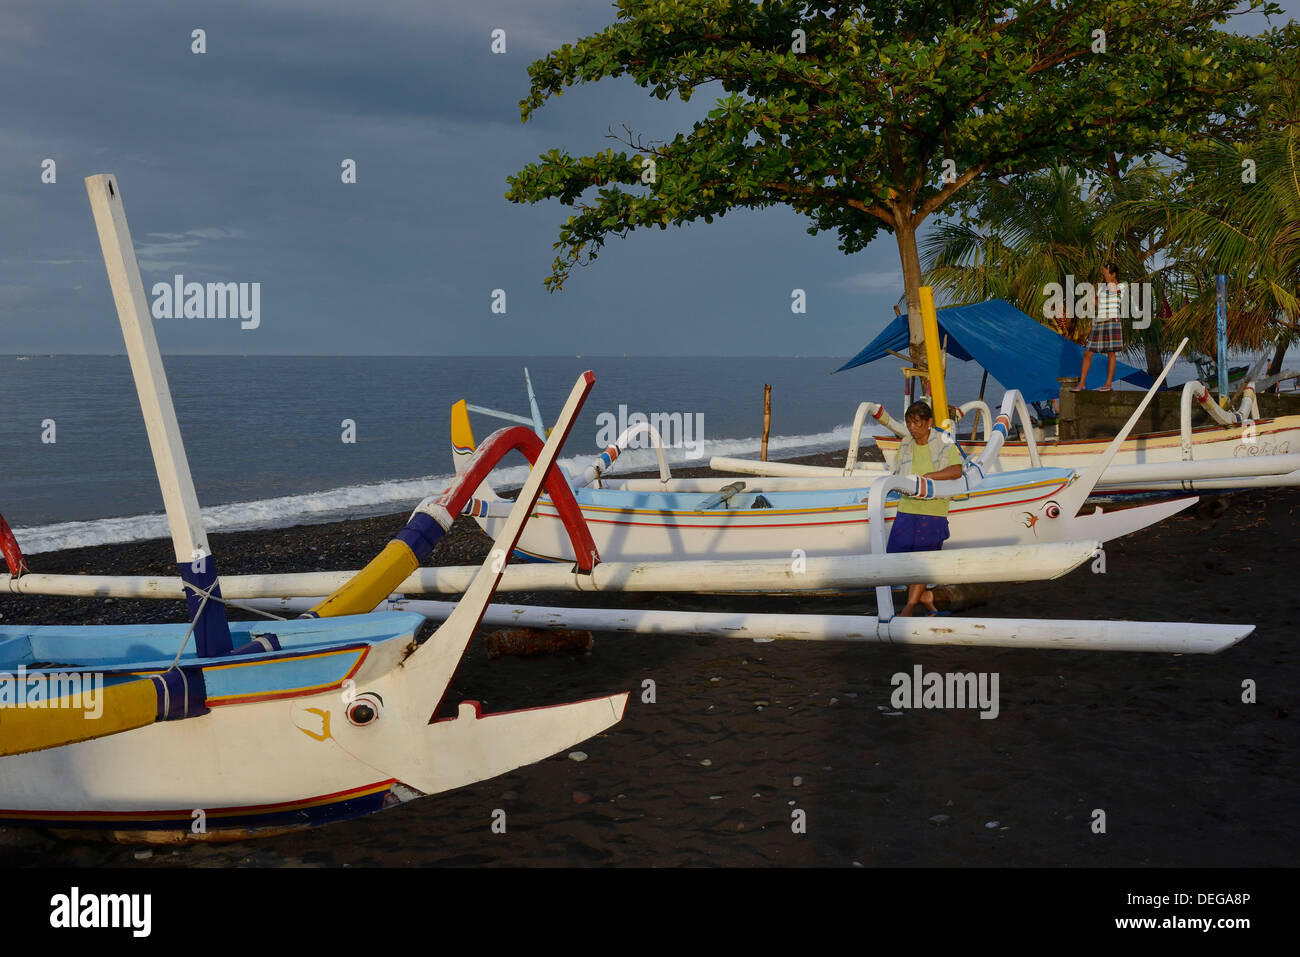 Indonesia, isola di Bali, Amed village, tradizionale barca da pesca sulla sabbiosa spiaggia nera Foto Stock